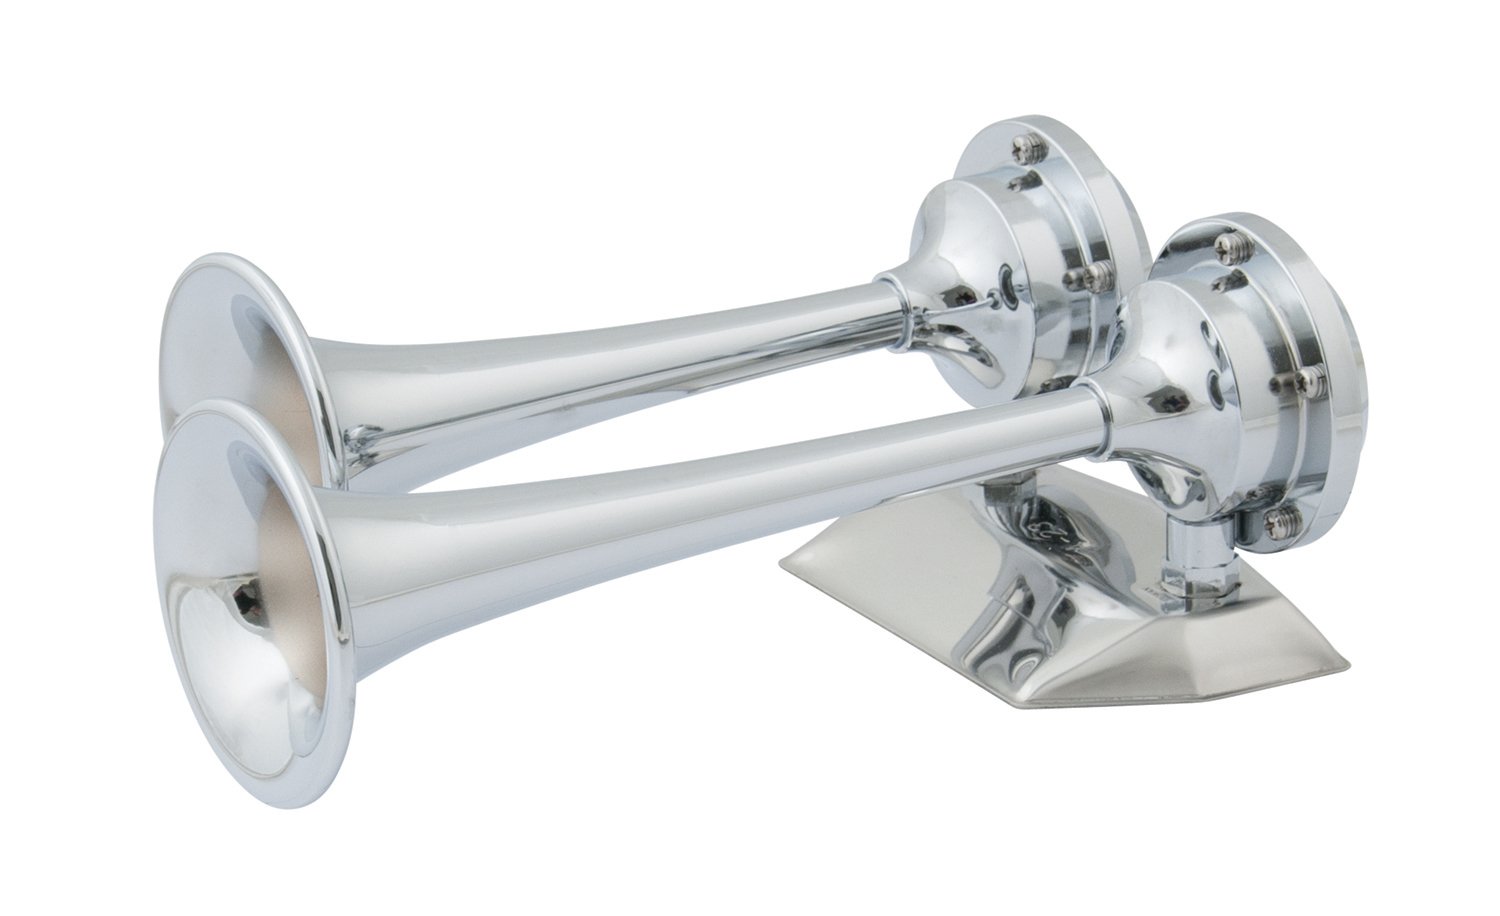 Lufthorn, Edelstahl Externer Gebrauch Trompeten Marine Elektrisches Zughorn  Einfache Installation Polierte Oberfläche Großes einzelnes Chrom 12V